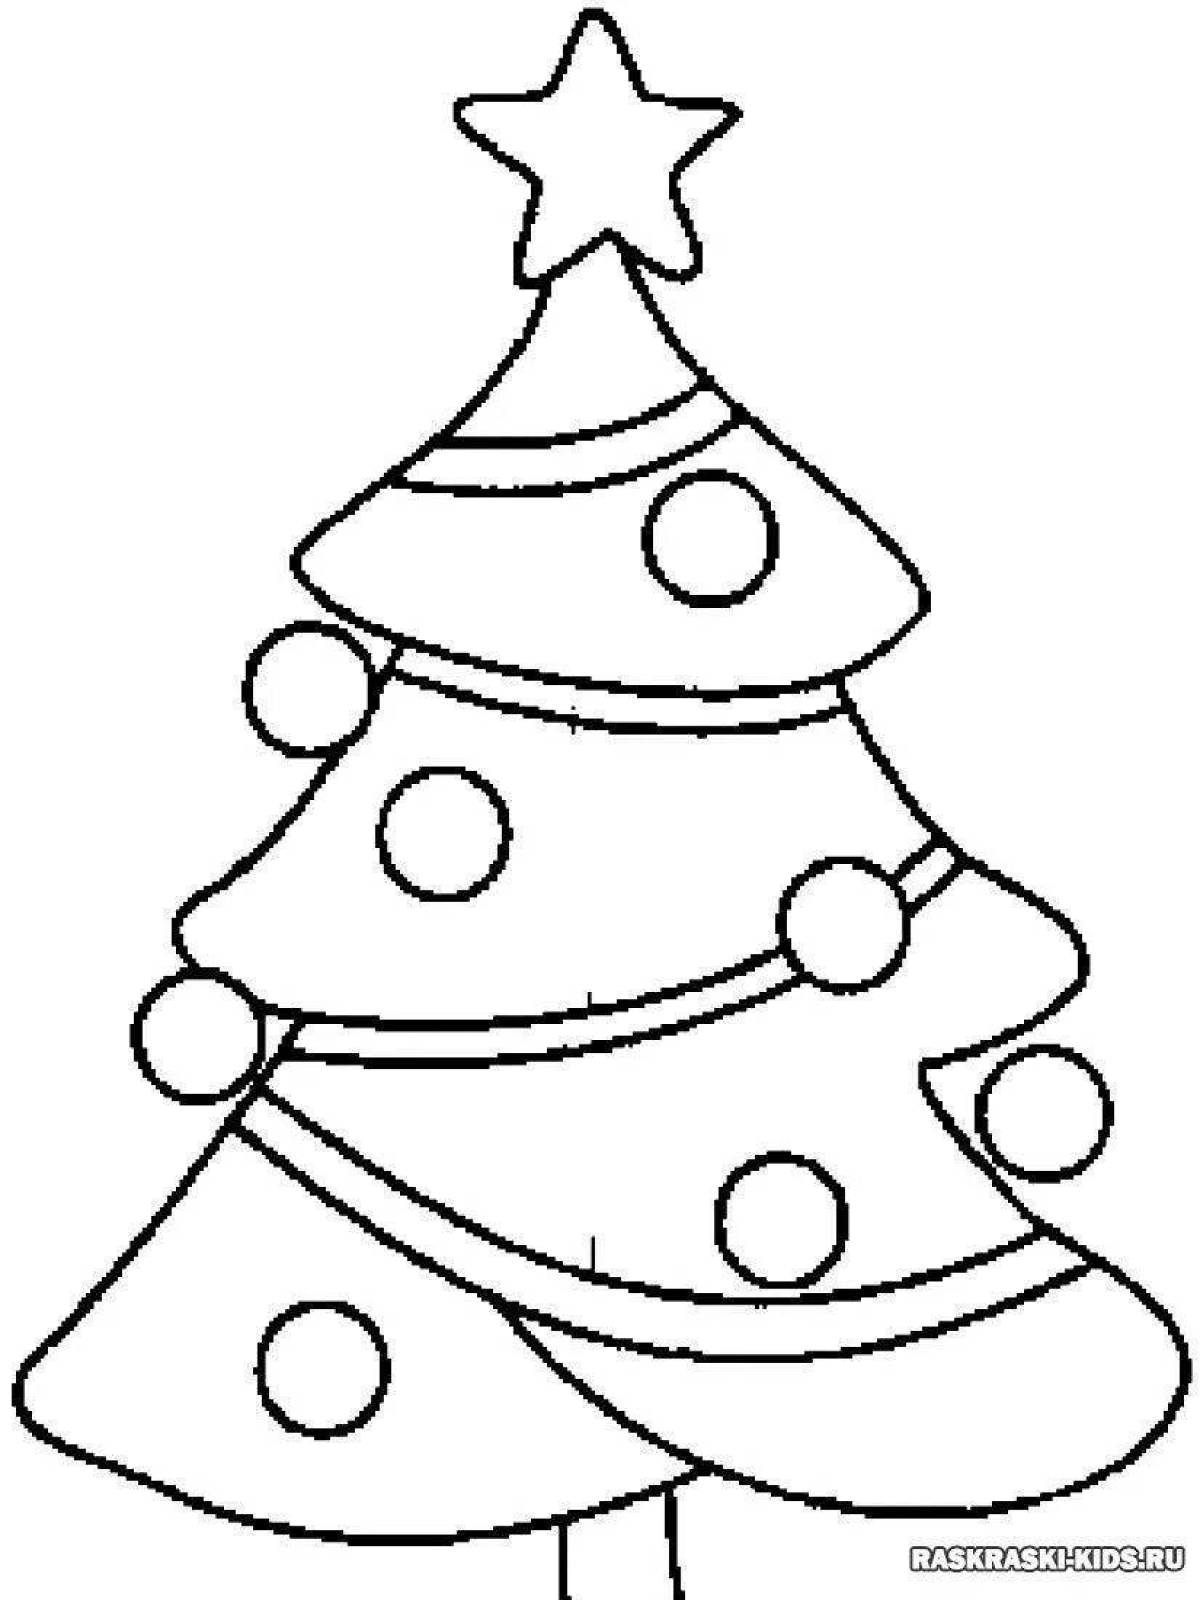 Ярко раскрашенная страница раскраски рождественской елки